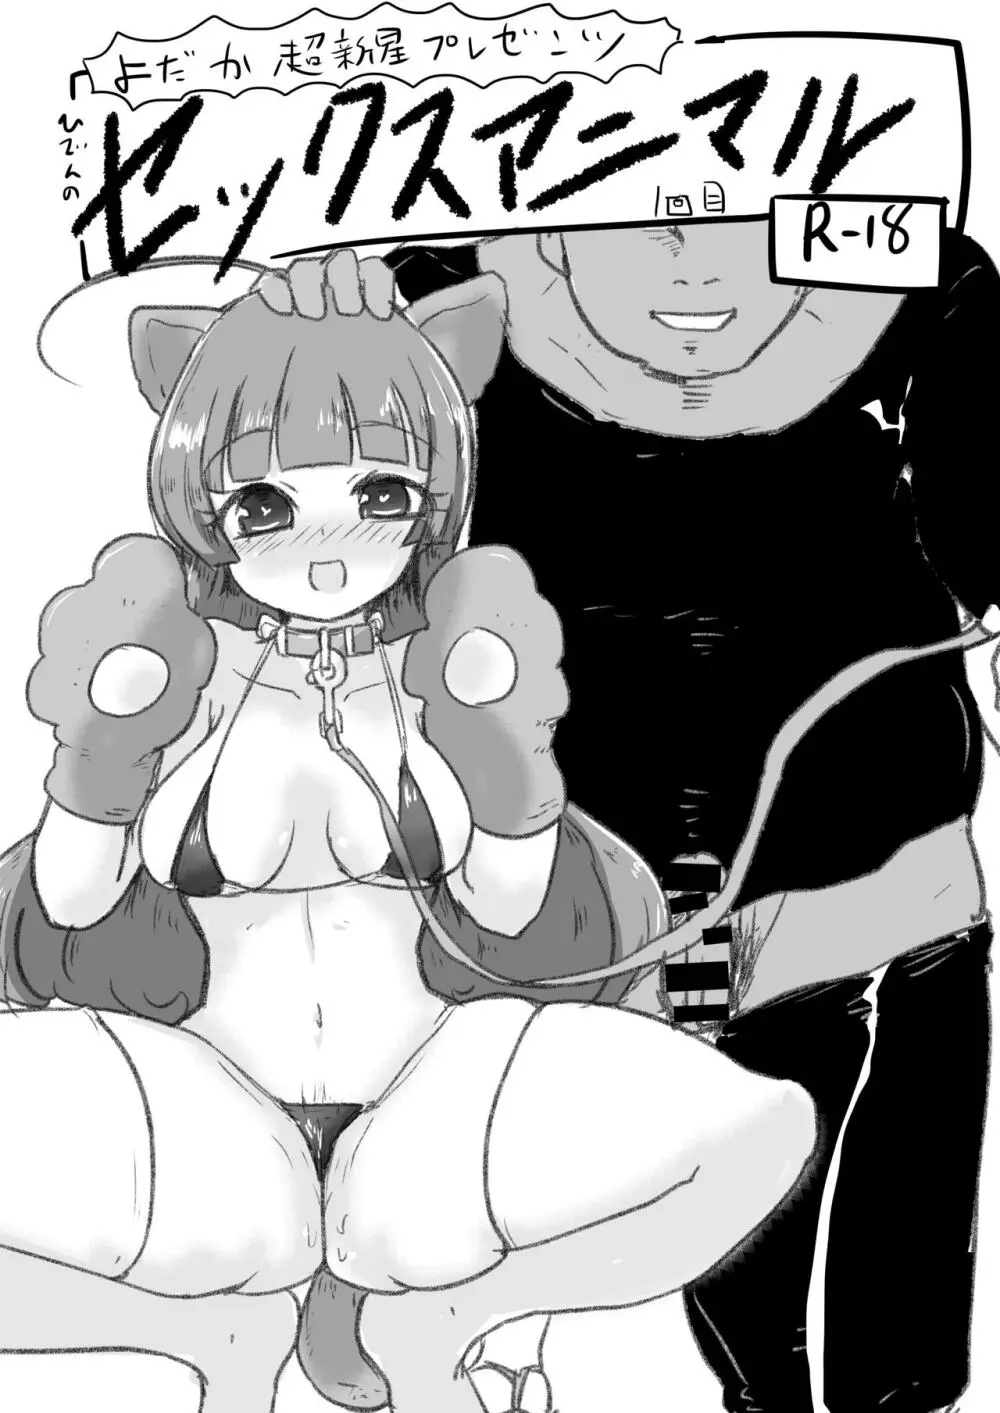 ひでんのセックスアニマル 1回目 - 同人誌 - エロ漫画 - NyaHentai